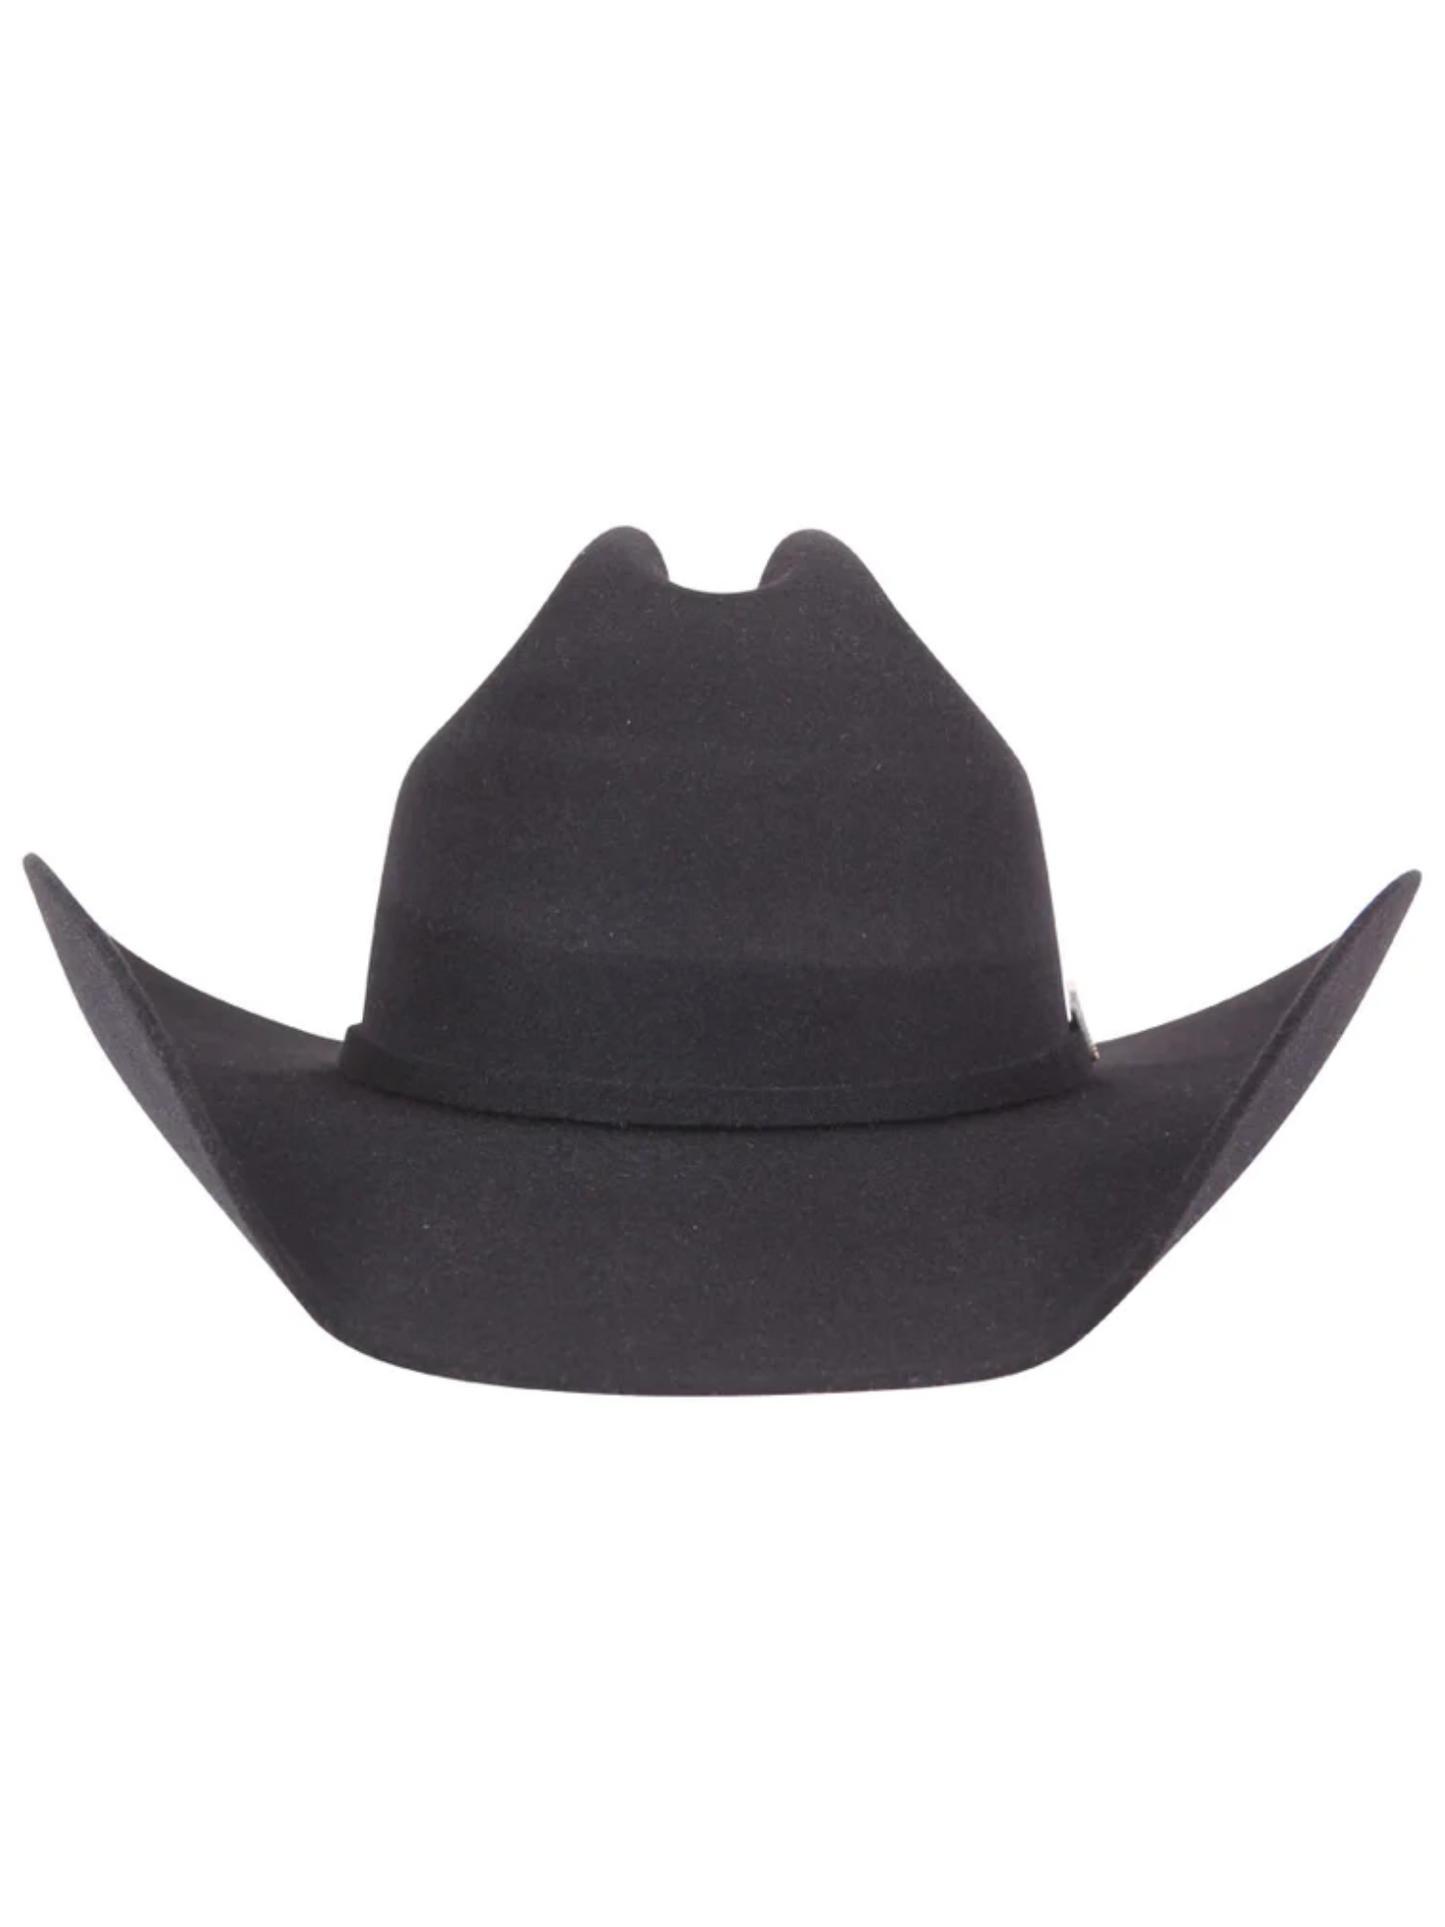 Texana Horma Marlboro 50X Lana para Hombre 'El Señor de los Cielos' - ID: 41669 Cowboy Hat El Señor de los Cielos 